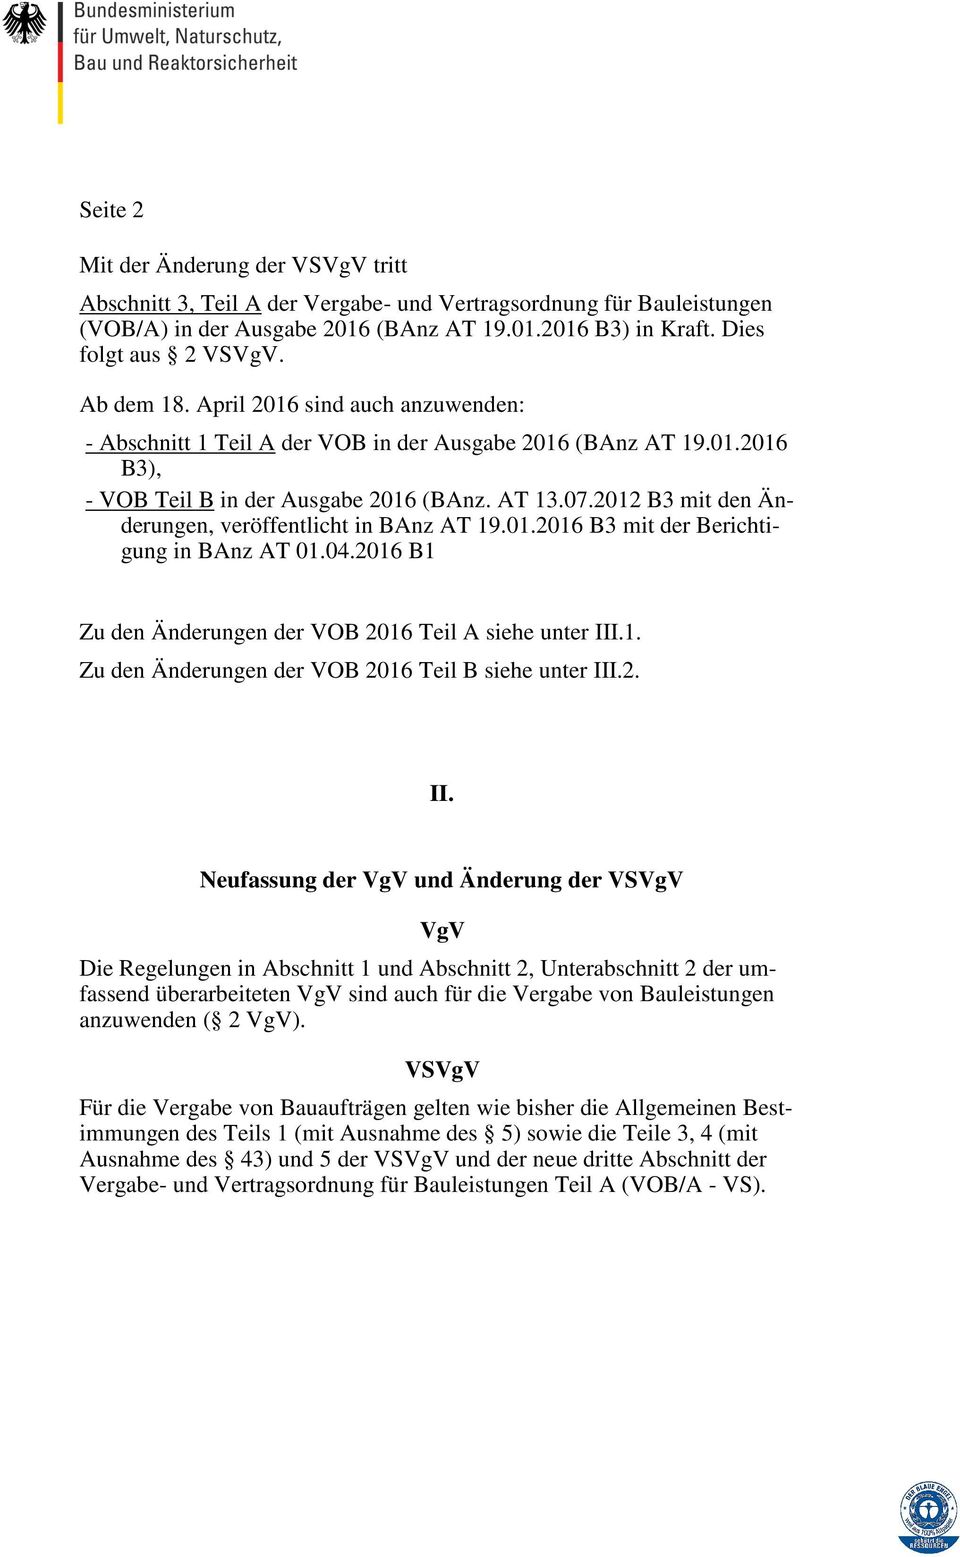 2012 B3 mit den Änderungen, veröffentlicht in BAnz AT 19.01.2016 B3 mit der Berichtigung in BAnz AT 01.04.2016 B1 Zu den Änderungen der VOB 2016 Teil A siehe unter III.1. Zu den Änderungen der VOB 2016 Teil B siehe unter III.